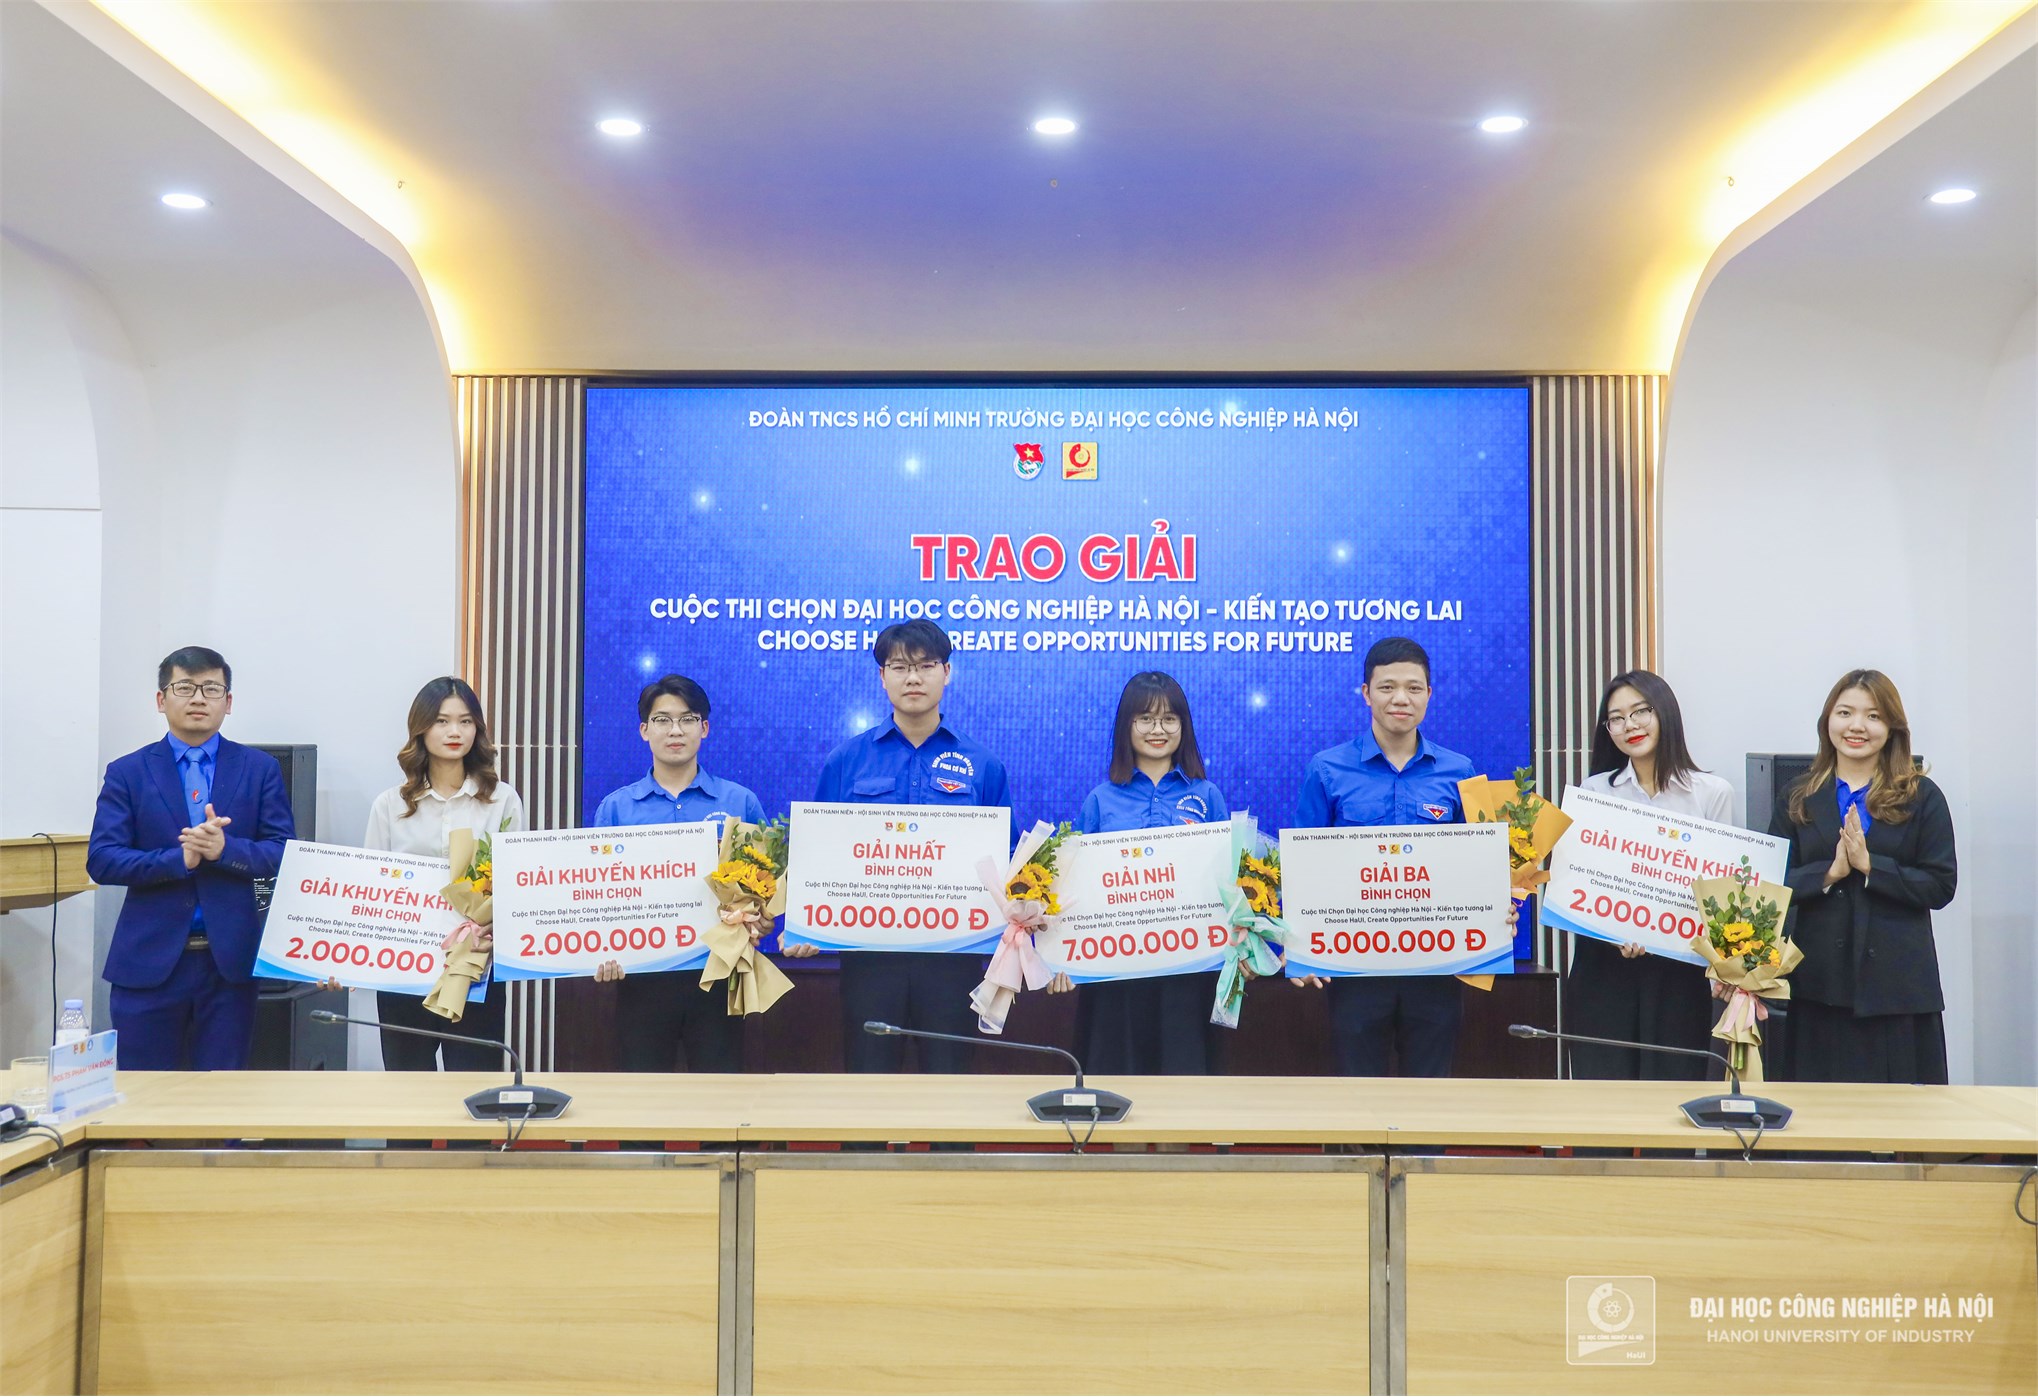 Phong trào Đoàn - Hội Đại học Công nghiệp Hà Nội lan tỏa khát vọng tuổi trẻ